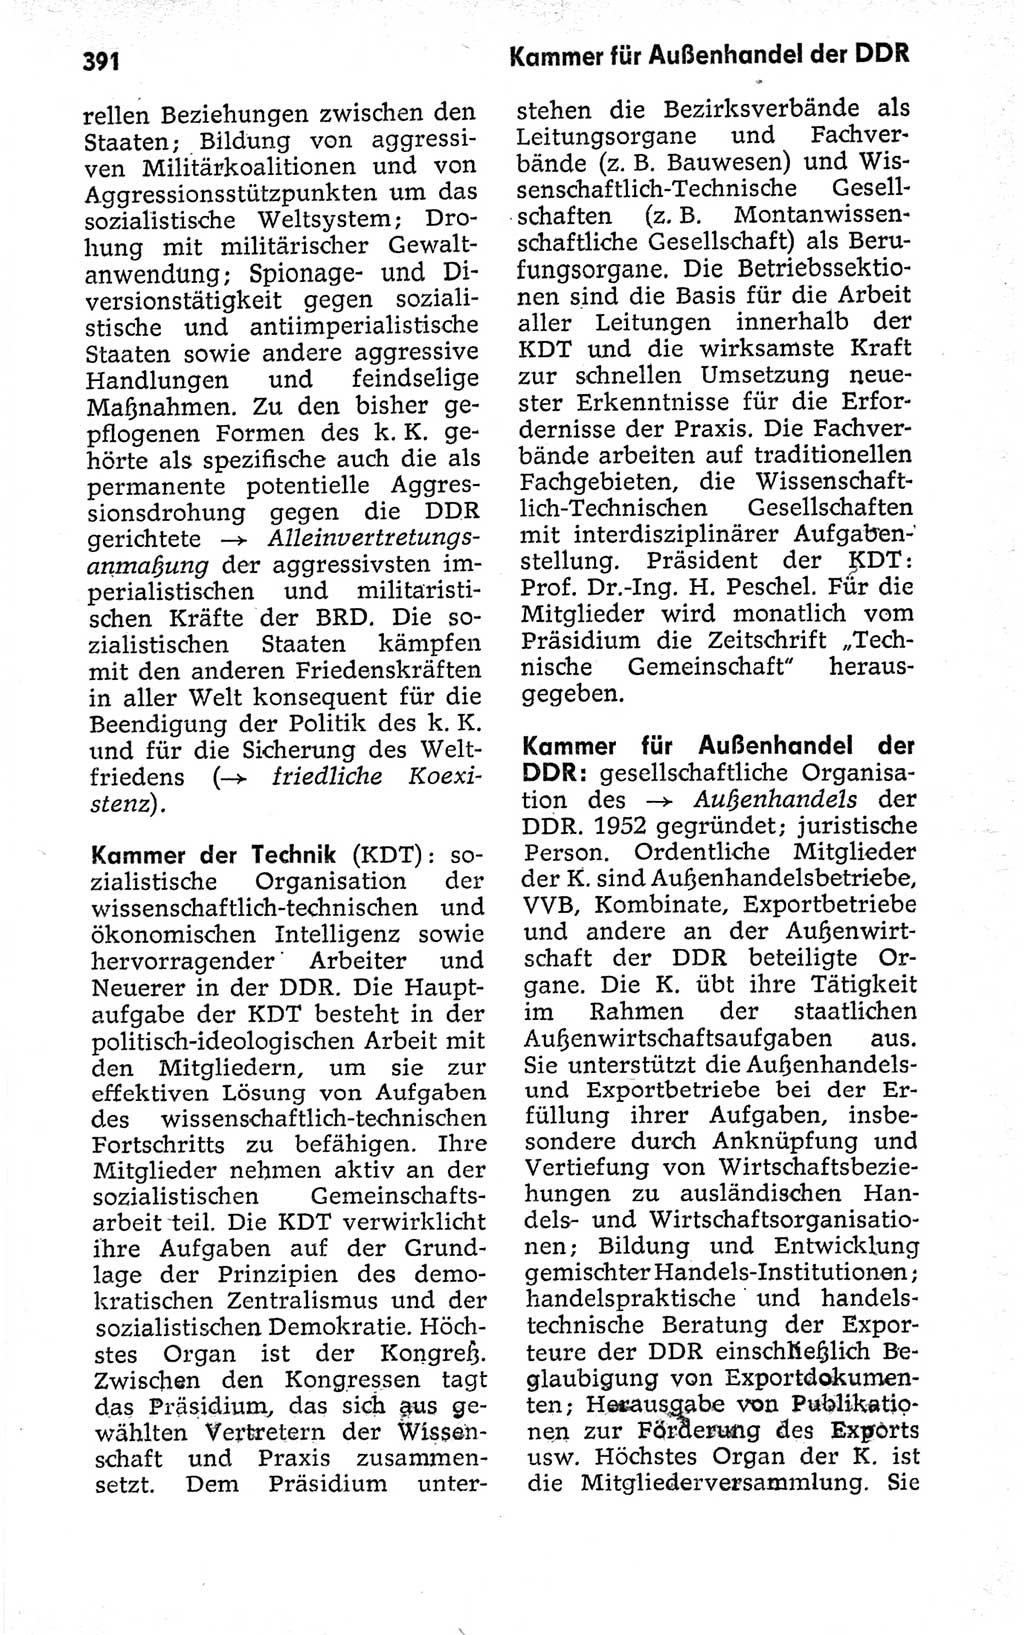 Kleines politisches Wörterbuch [Deutsche Demokratische Republik (DDR)] 1973, Seite 391 (Kl. pol. Wb. DDR 1973, S. 391)